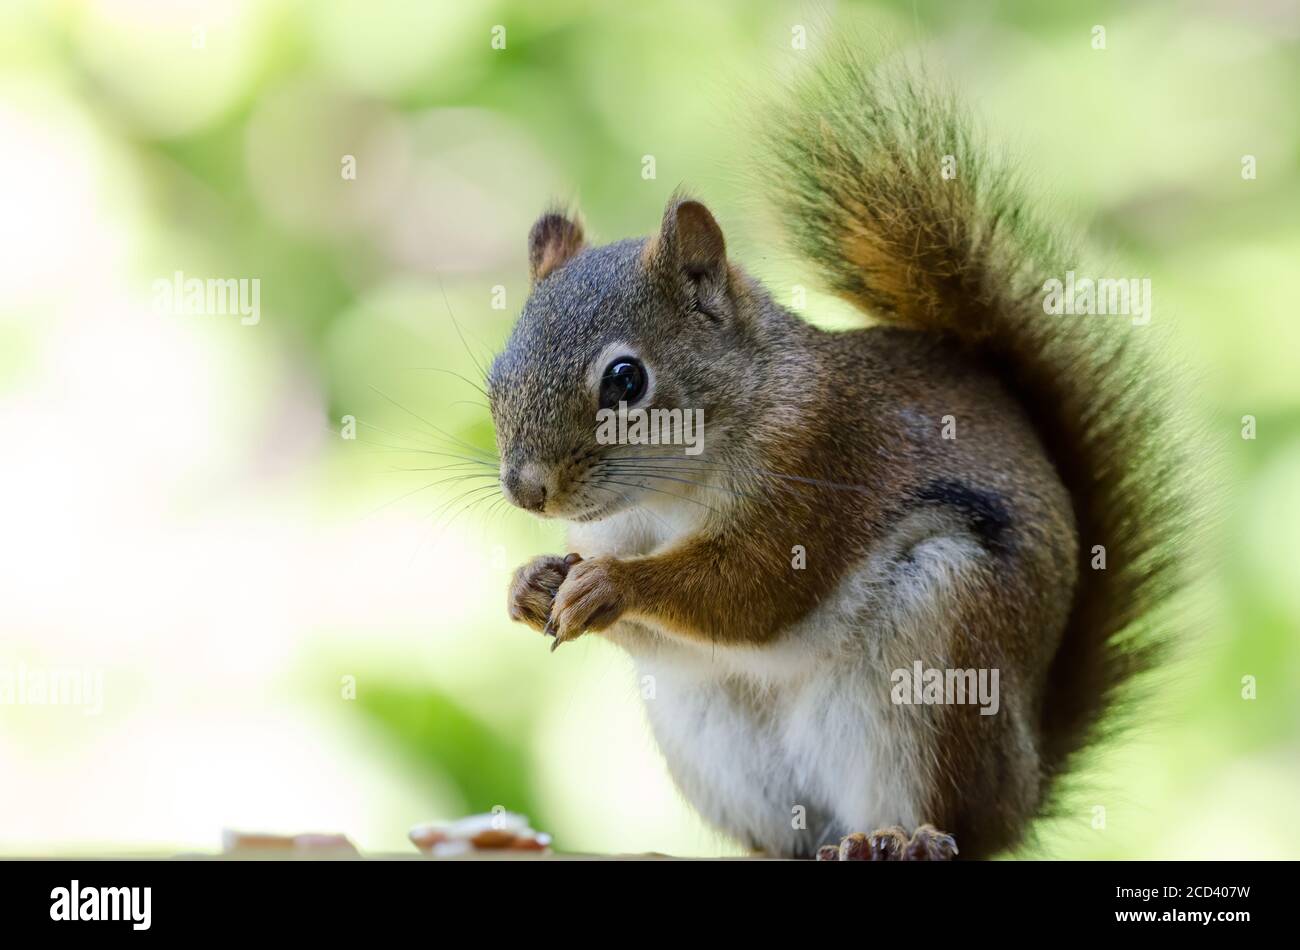 American Red Squirrel (Tamiasciurus hudsonicus) Stock Photo